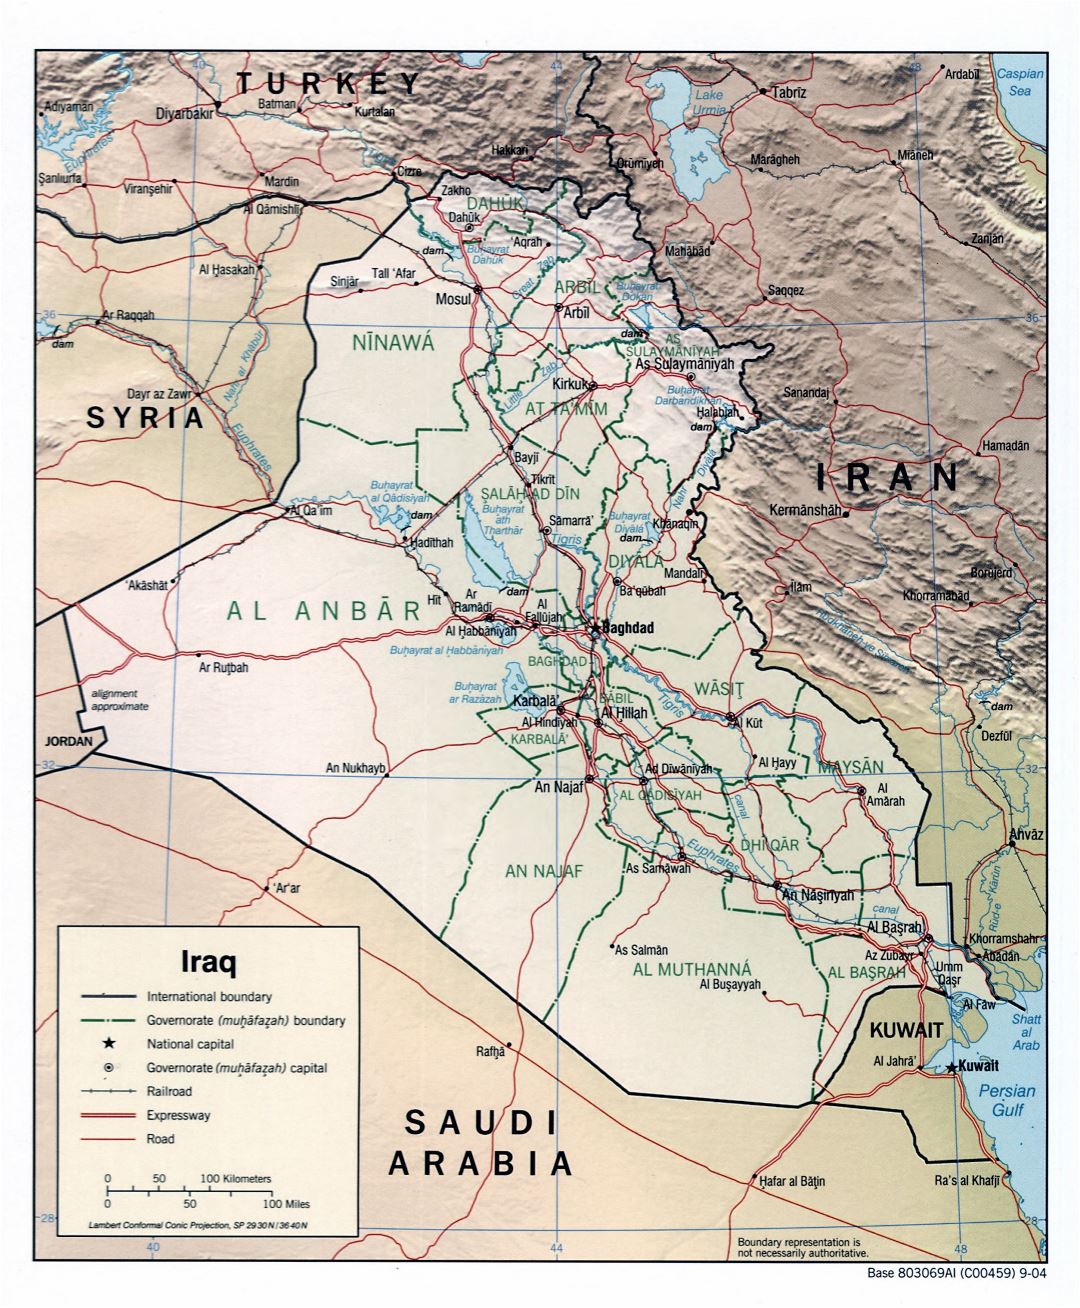 Grande detallado mapa político y administrativo de Irak con relieve, carreteras, autopistas, ferrocarriles y principales ciudades - 2004